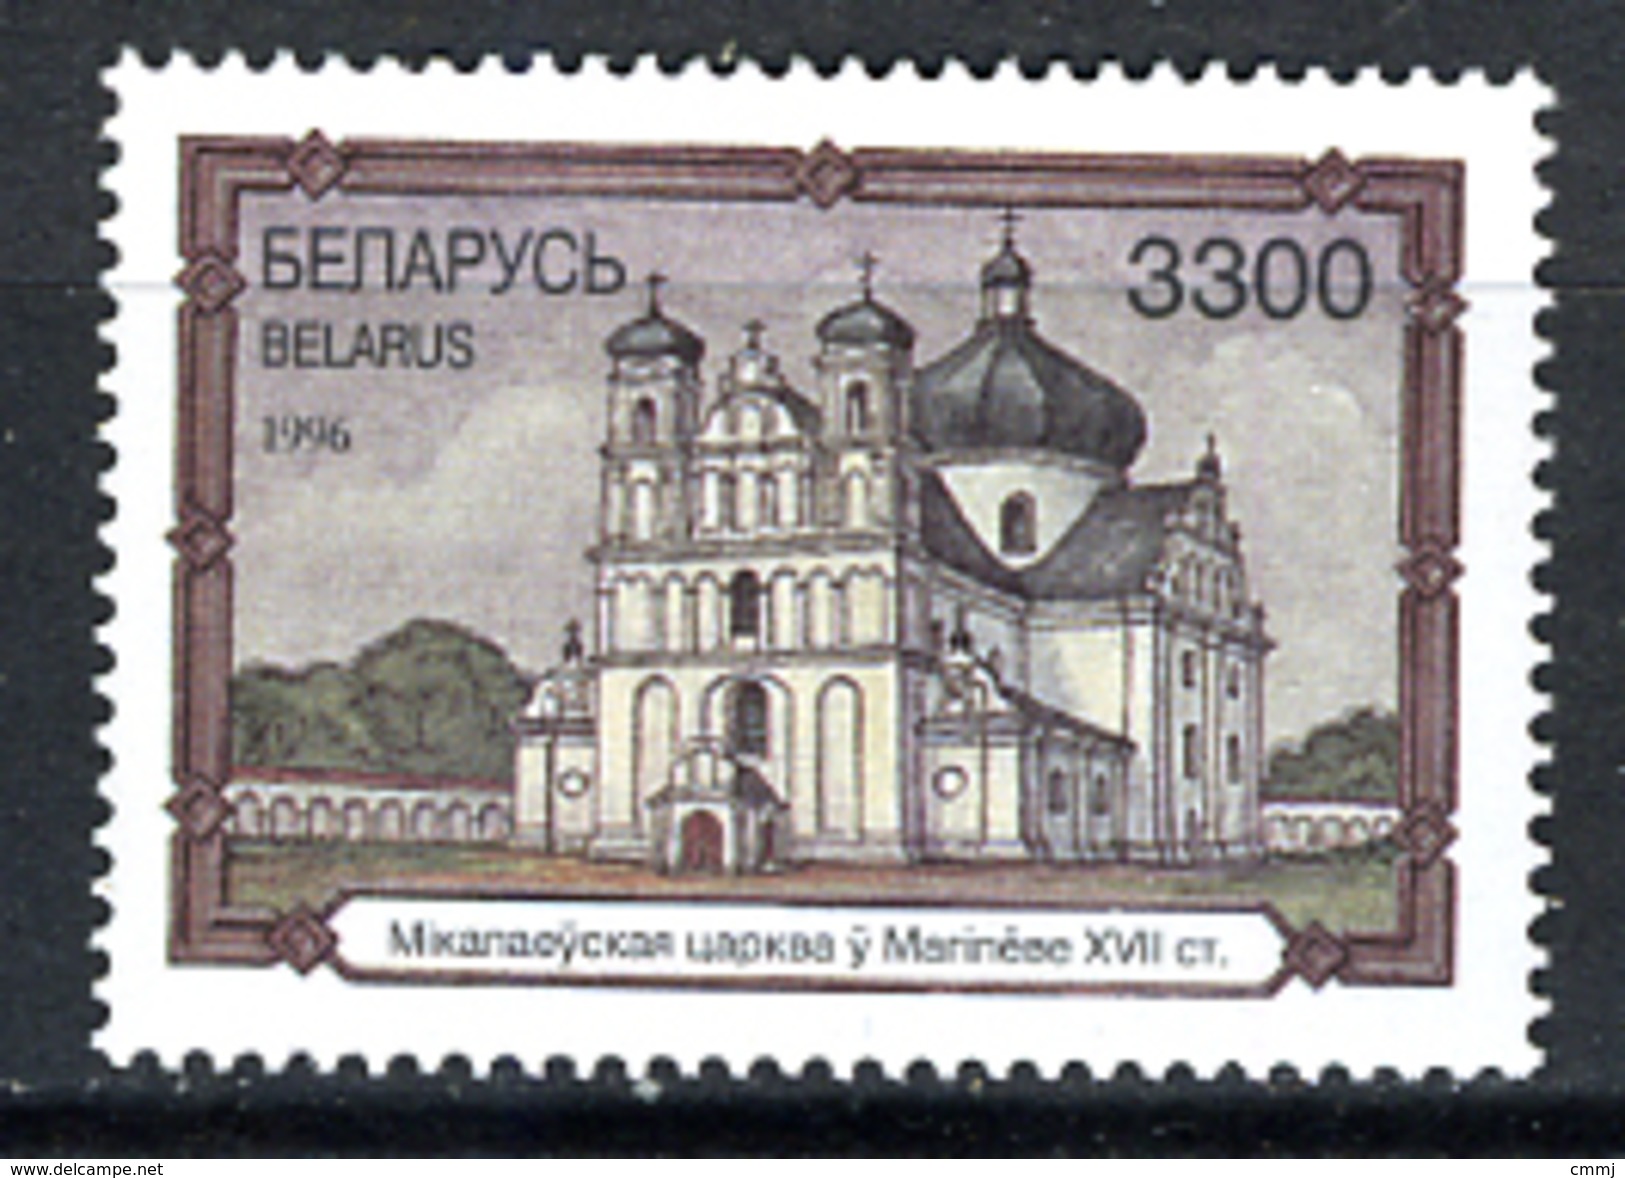 ARCHITECTURE - 1996 - BELARIUS - Mi. Nr. 194 -  NH - (CW2427.49) - Belarus